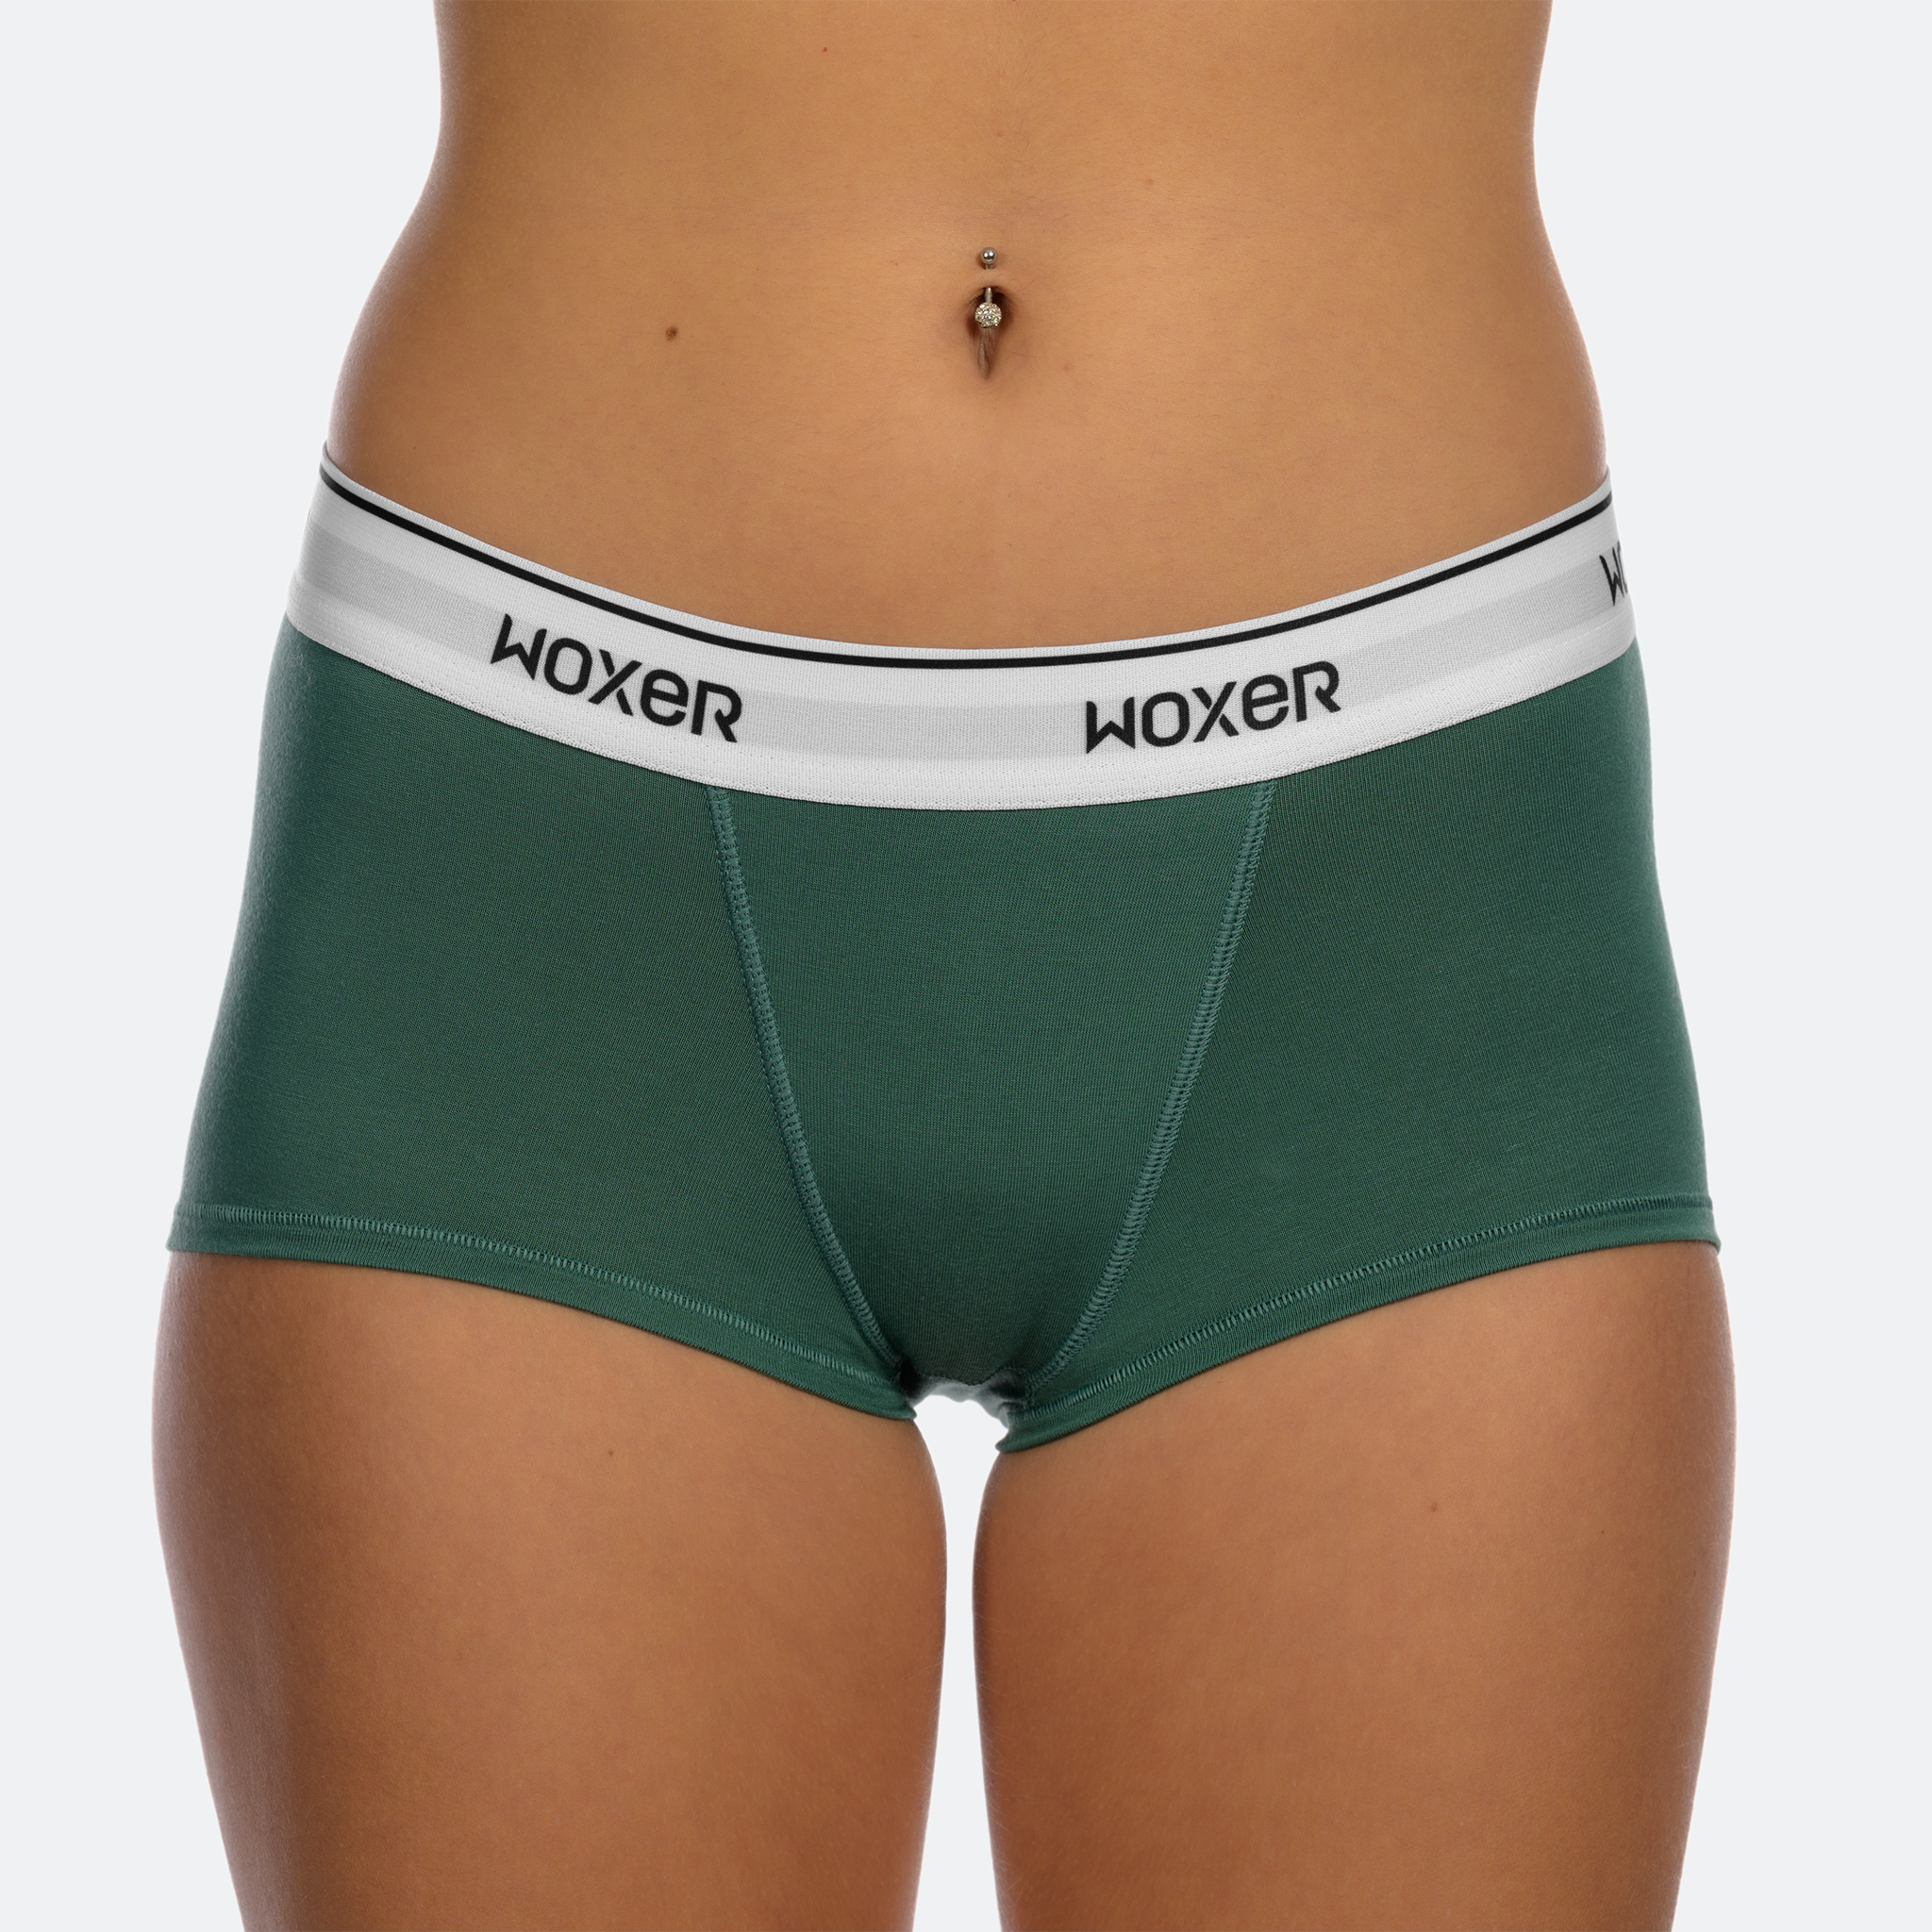 Baller Jade Light | Women's Boxer's & Boy Shorts | Woxer